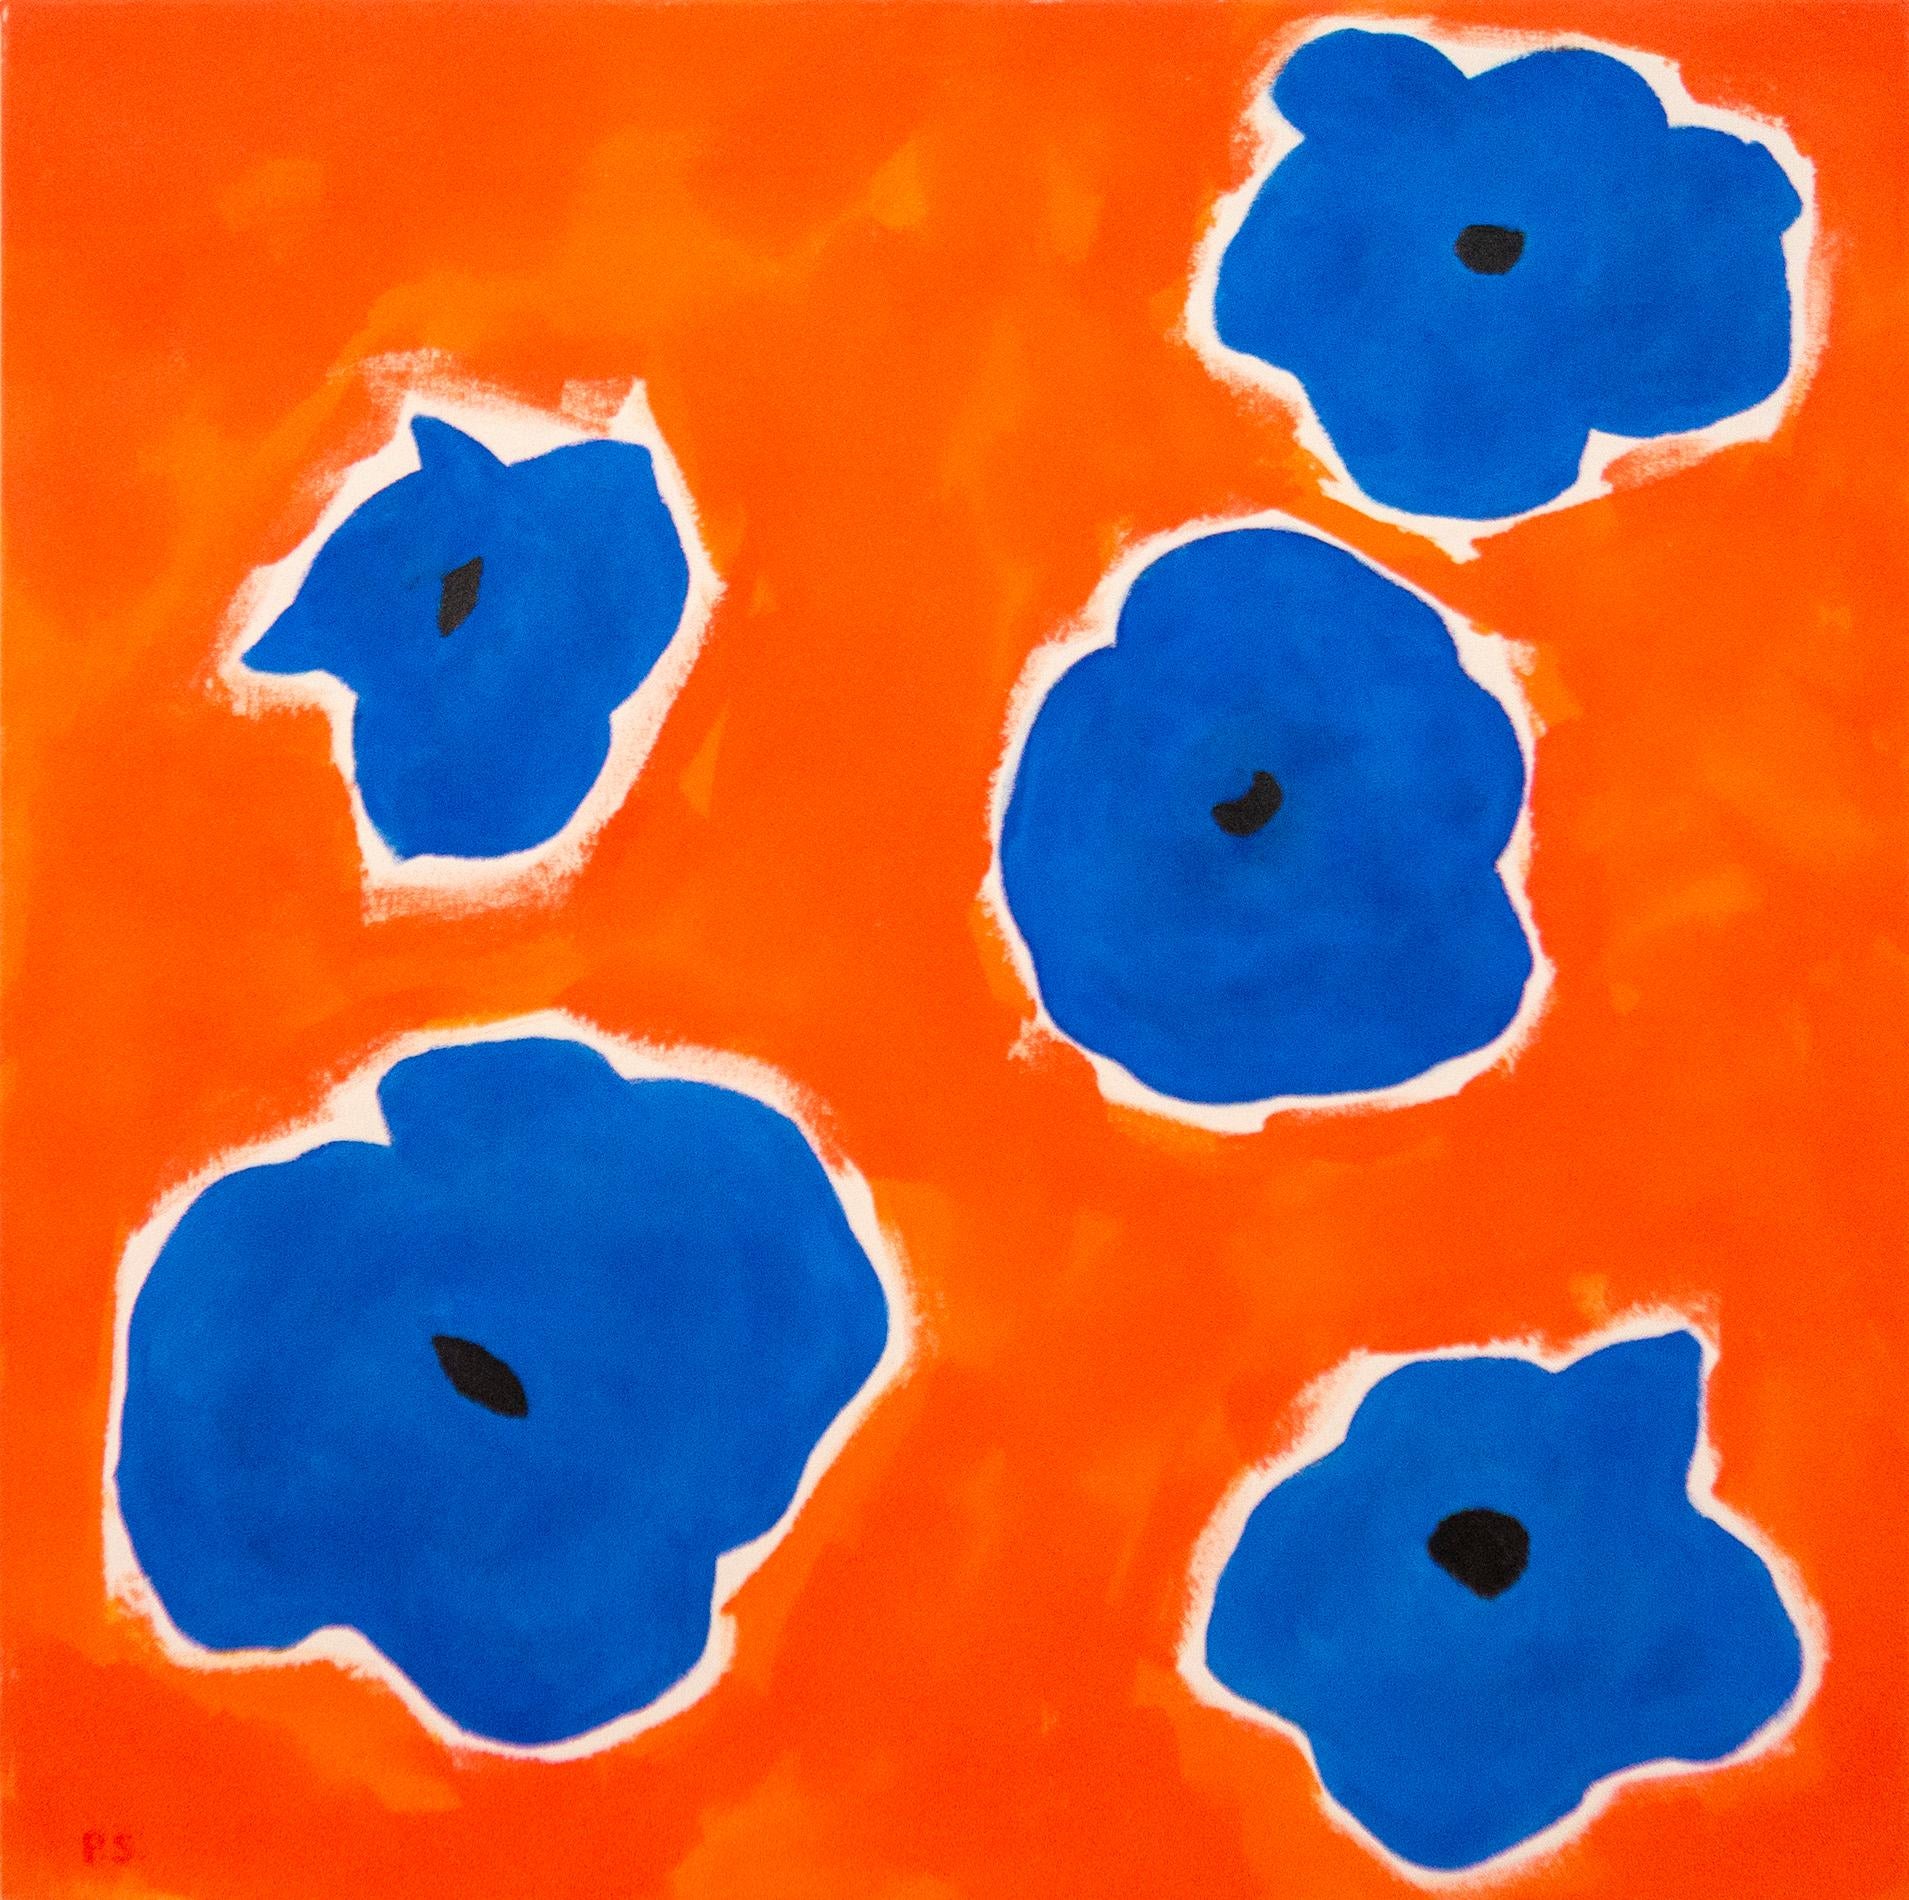 Still-Life Painting Pat Service - Five Flowers Blue on Red - coloré, minimal, abstrait, floral, huile sur toile